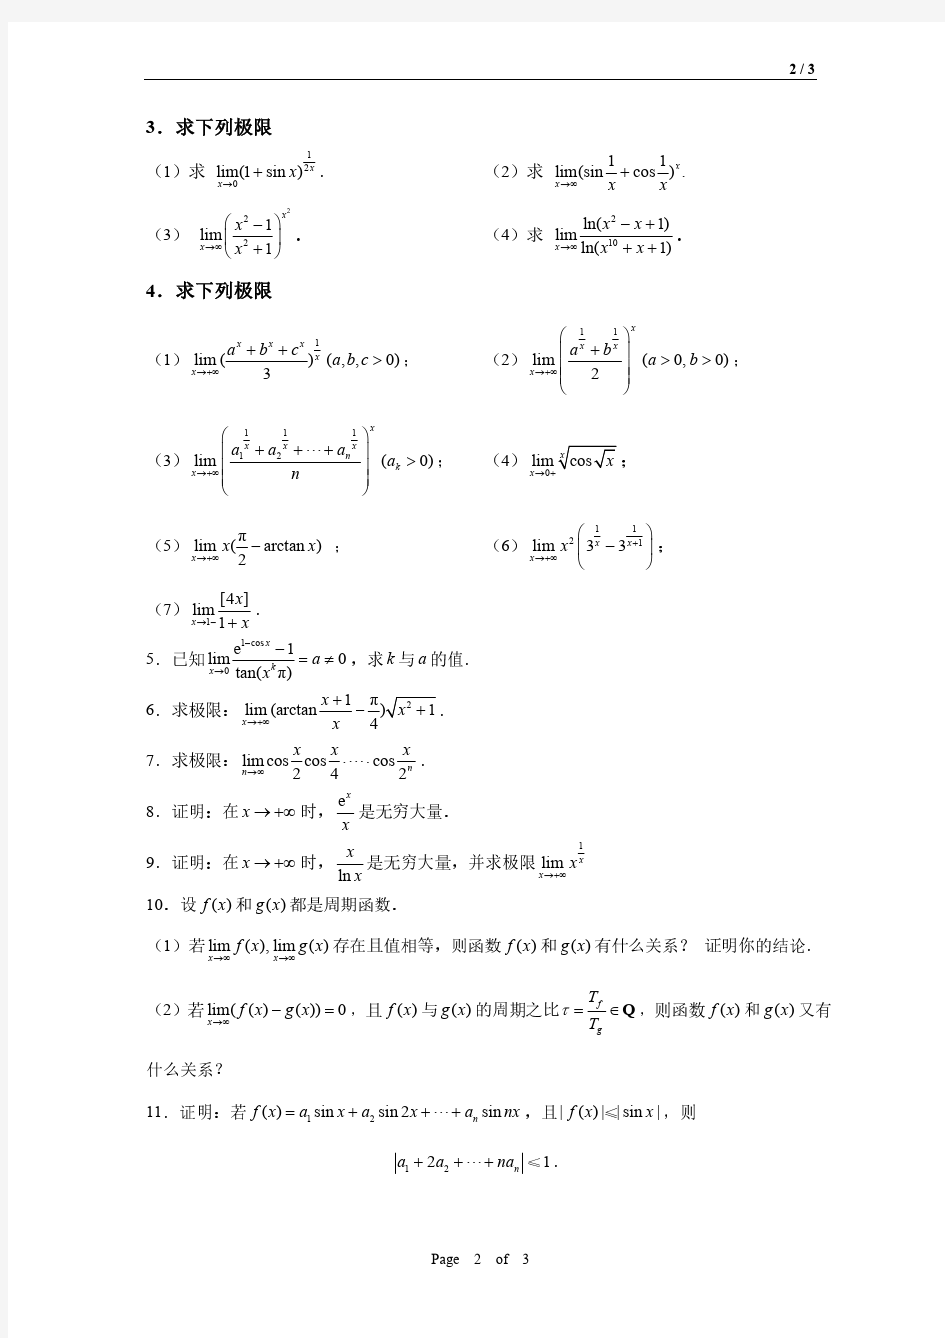 清华大学微积分习题课(Stolz定理、数列极限、函数极限)